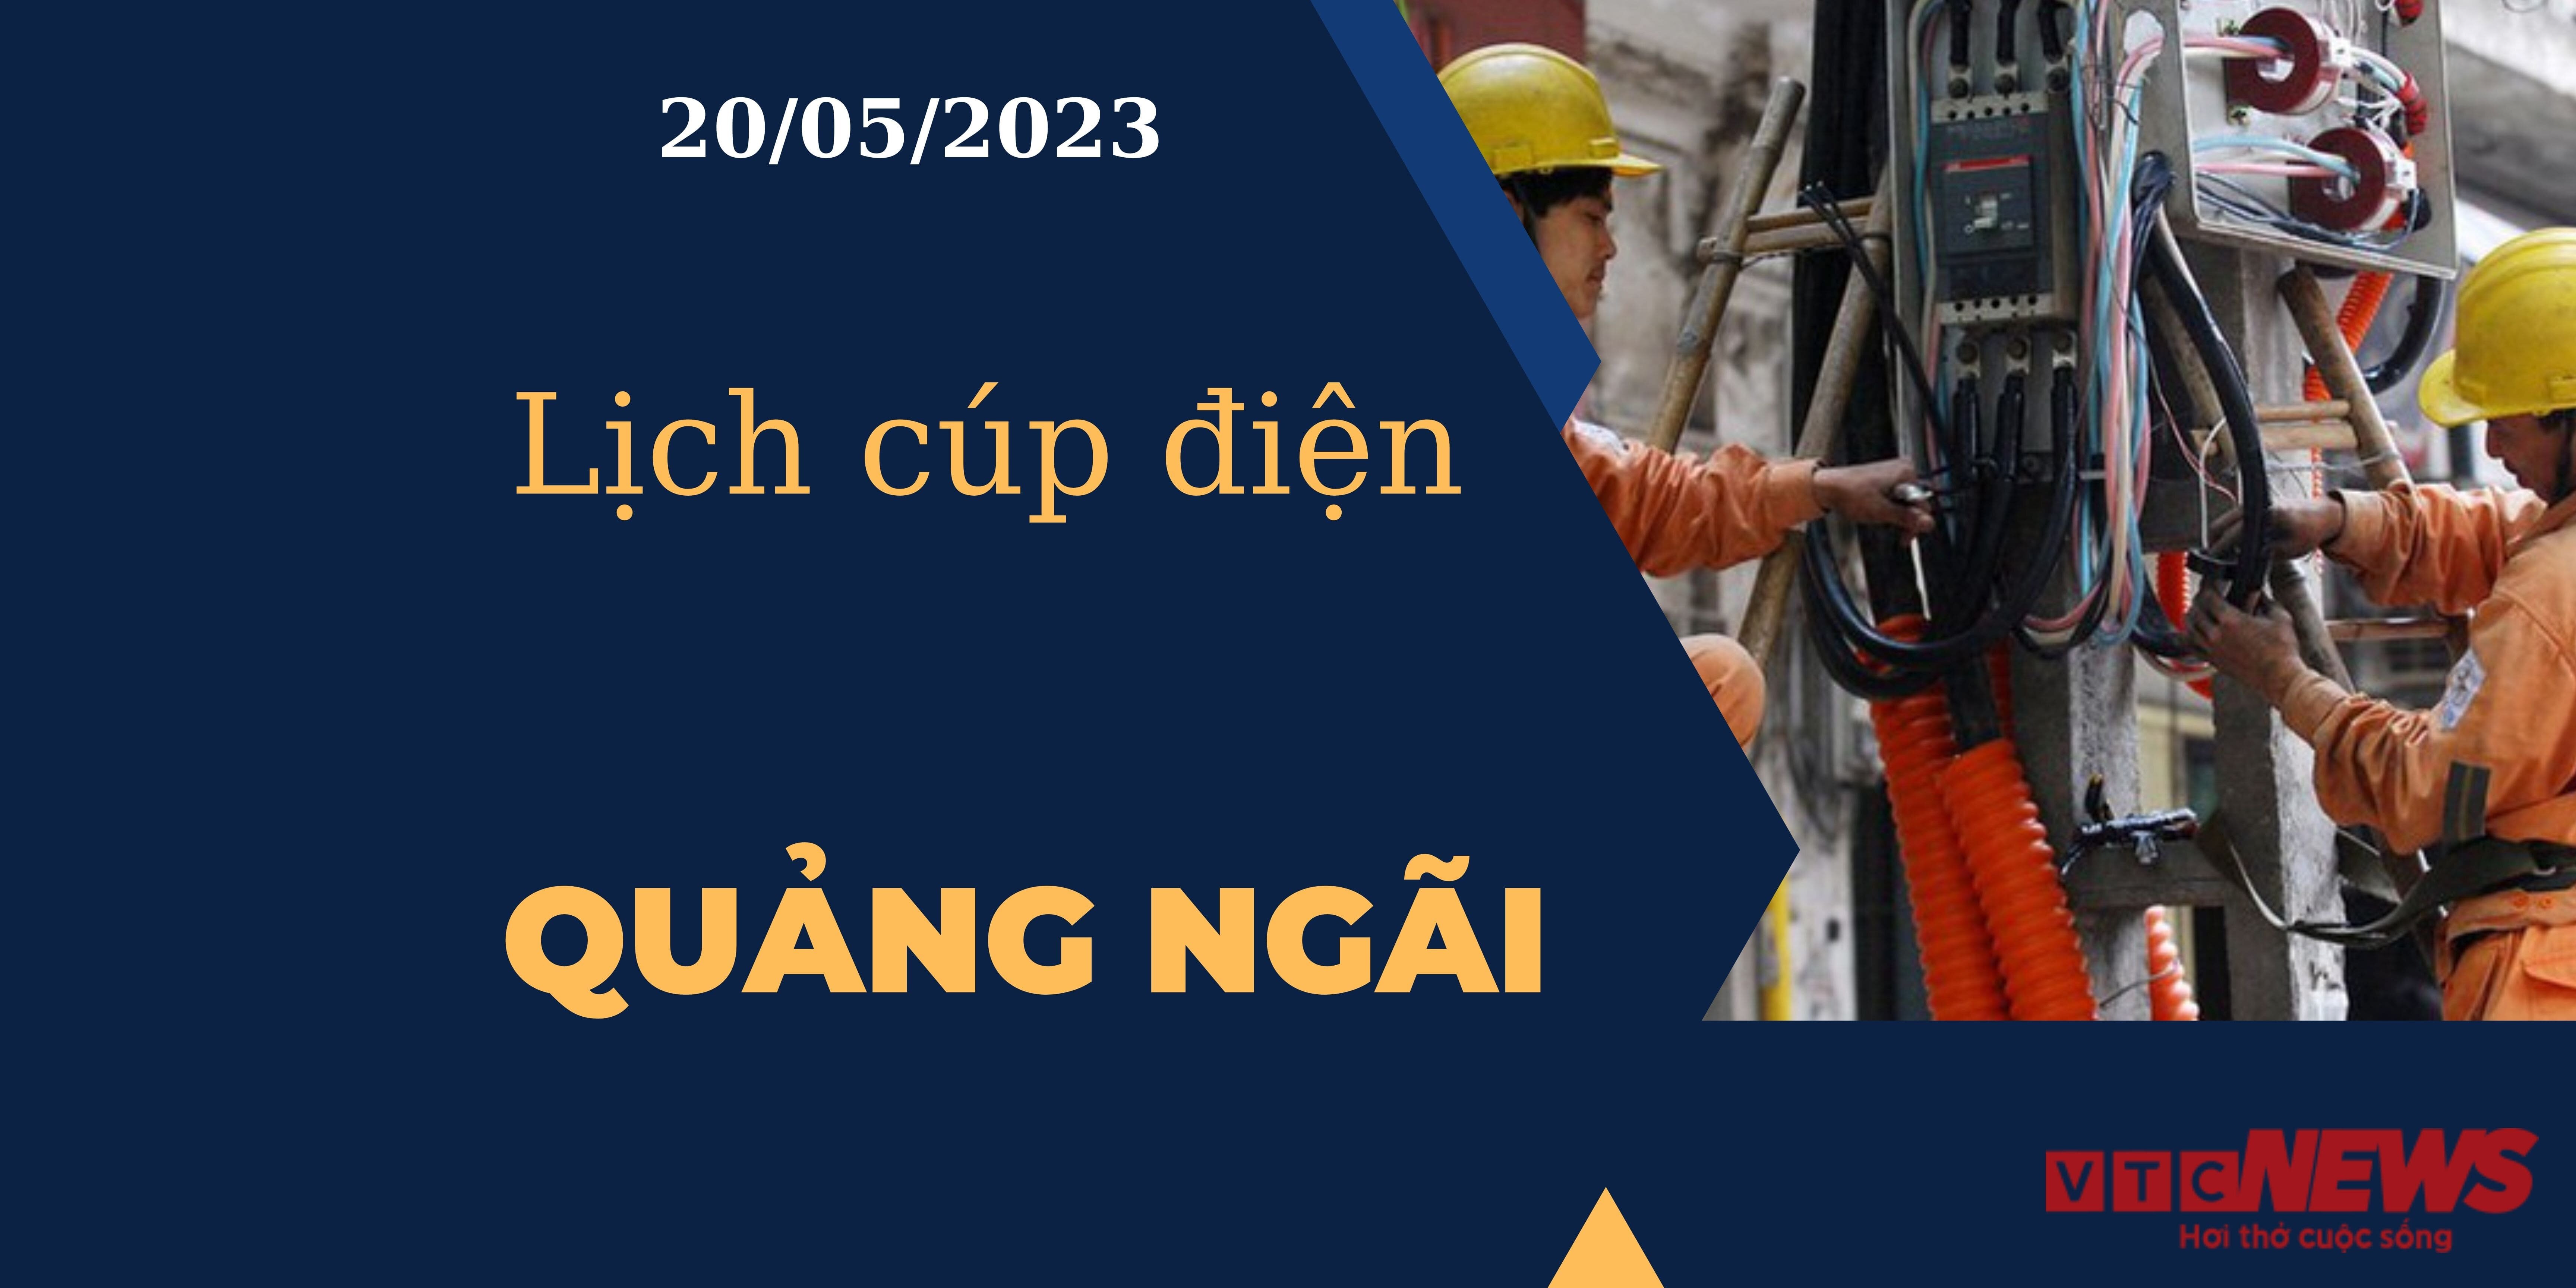 Lịch cúp điện hôm nay tại Quảng Ngãi ngày 20/05/2023 - 1